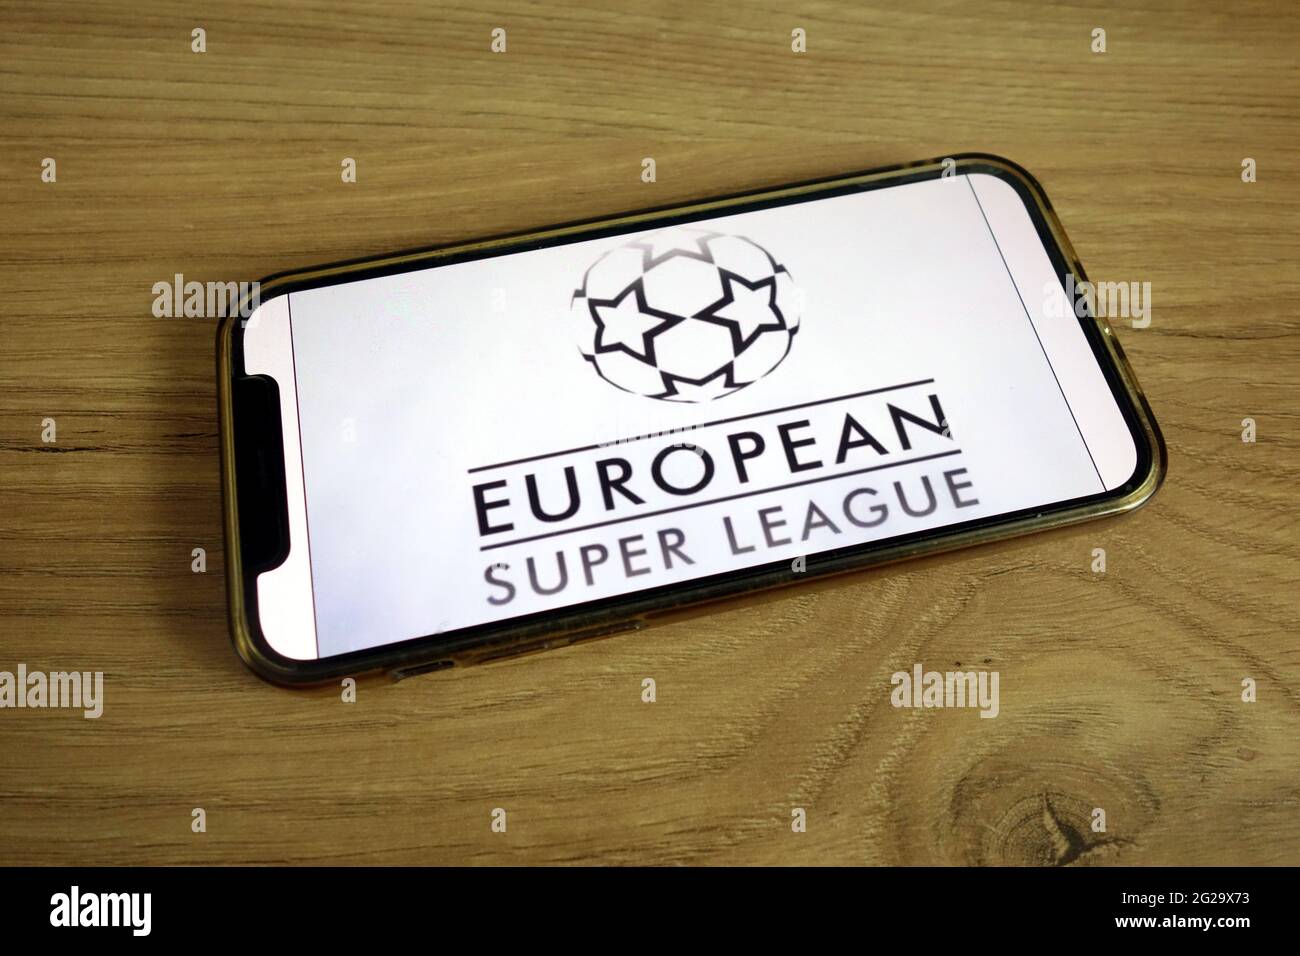 KONSKIE, POLONIA - 9 giugno 2021: Logo della Super League europea visualizzato sul telefono cellulare Foto Stock